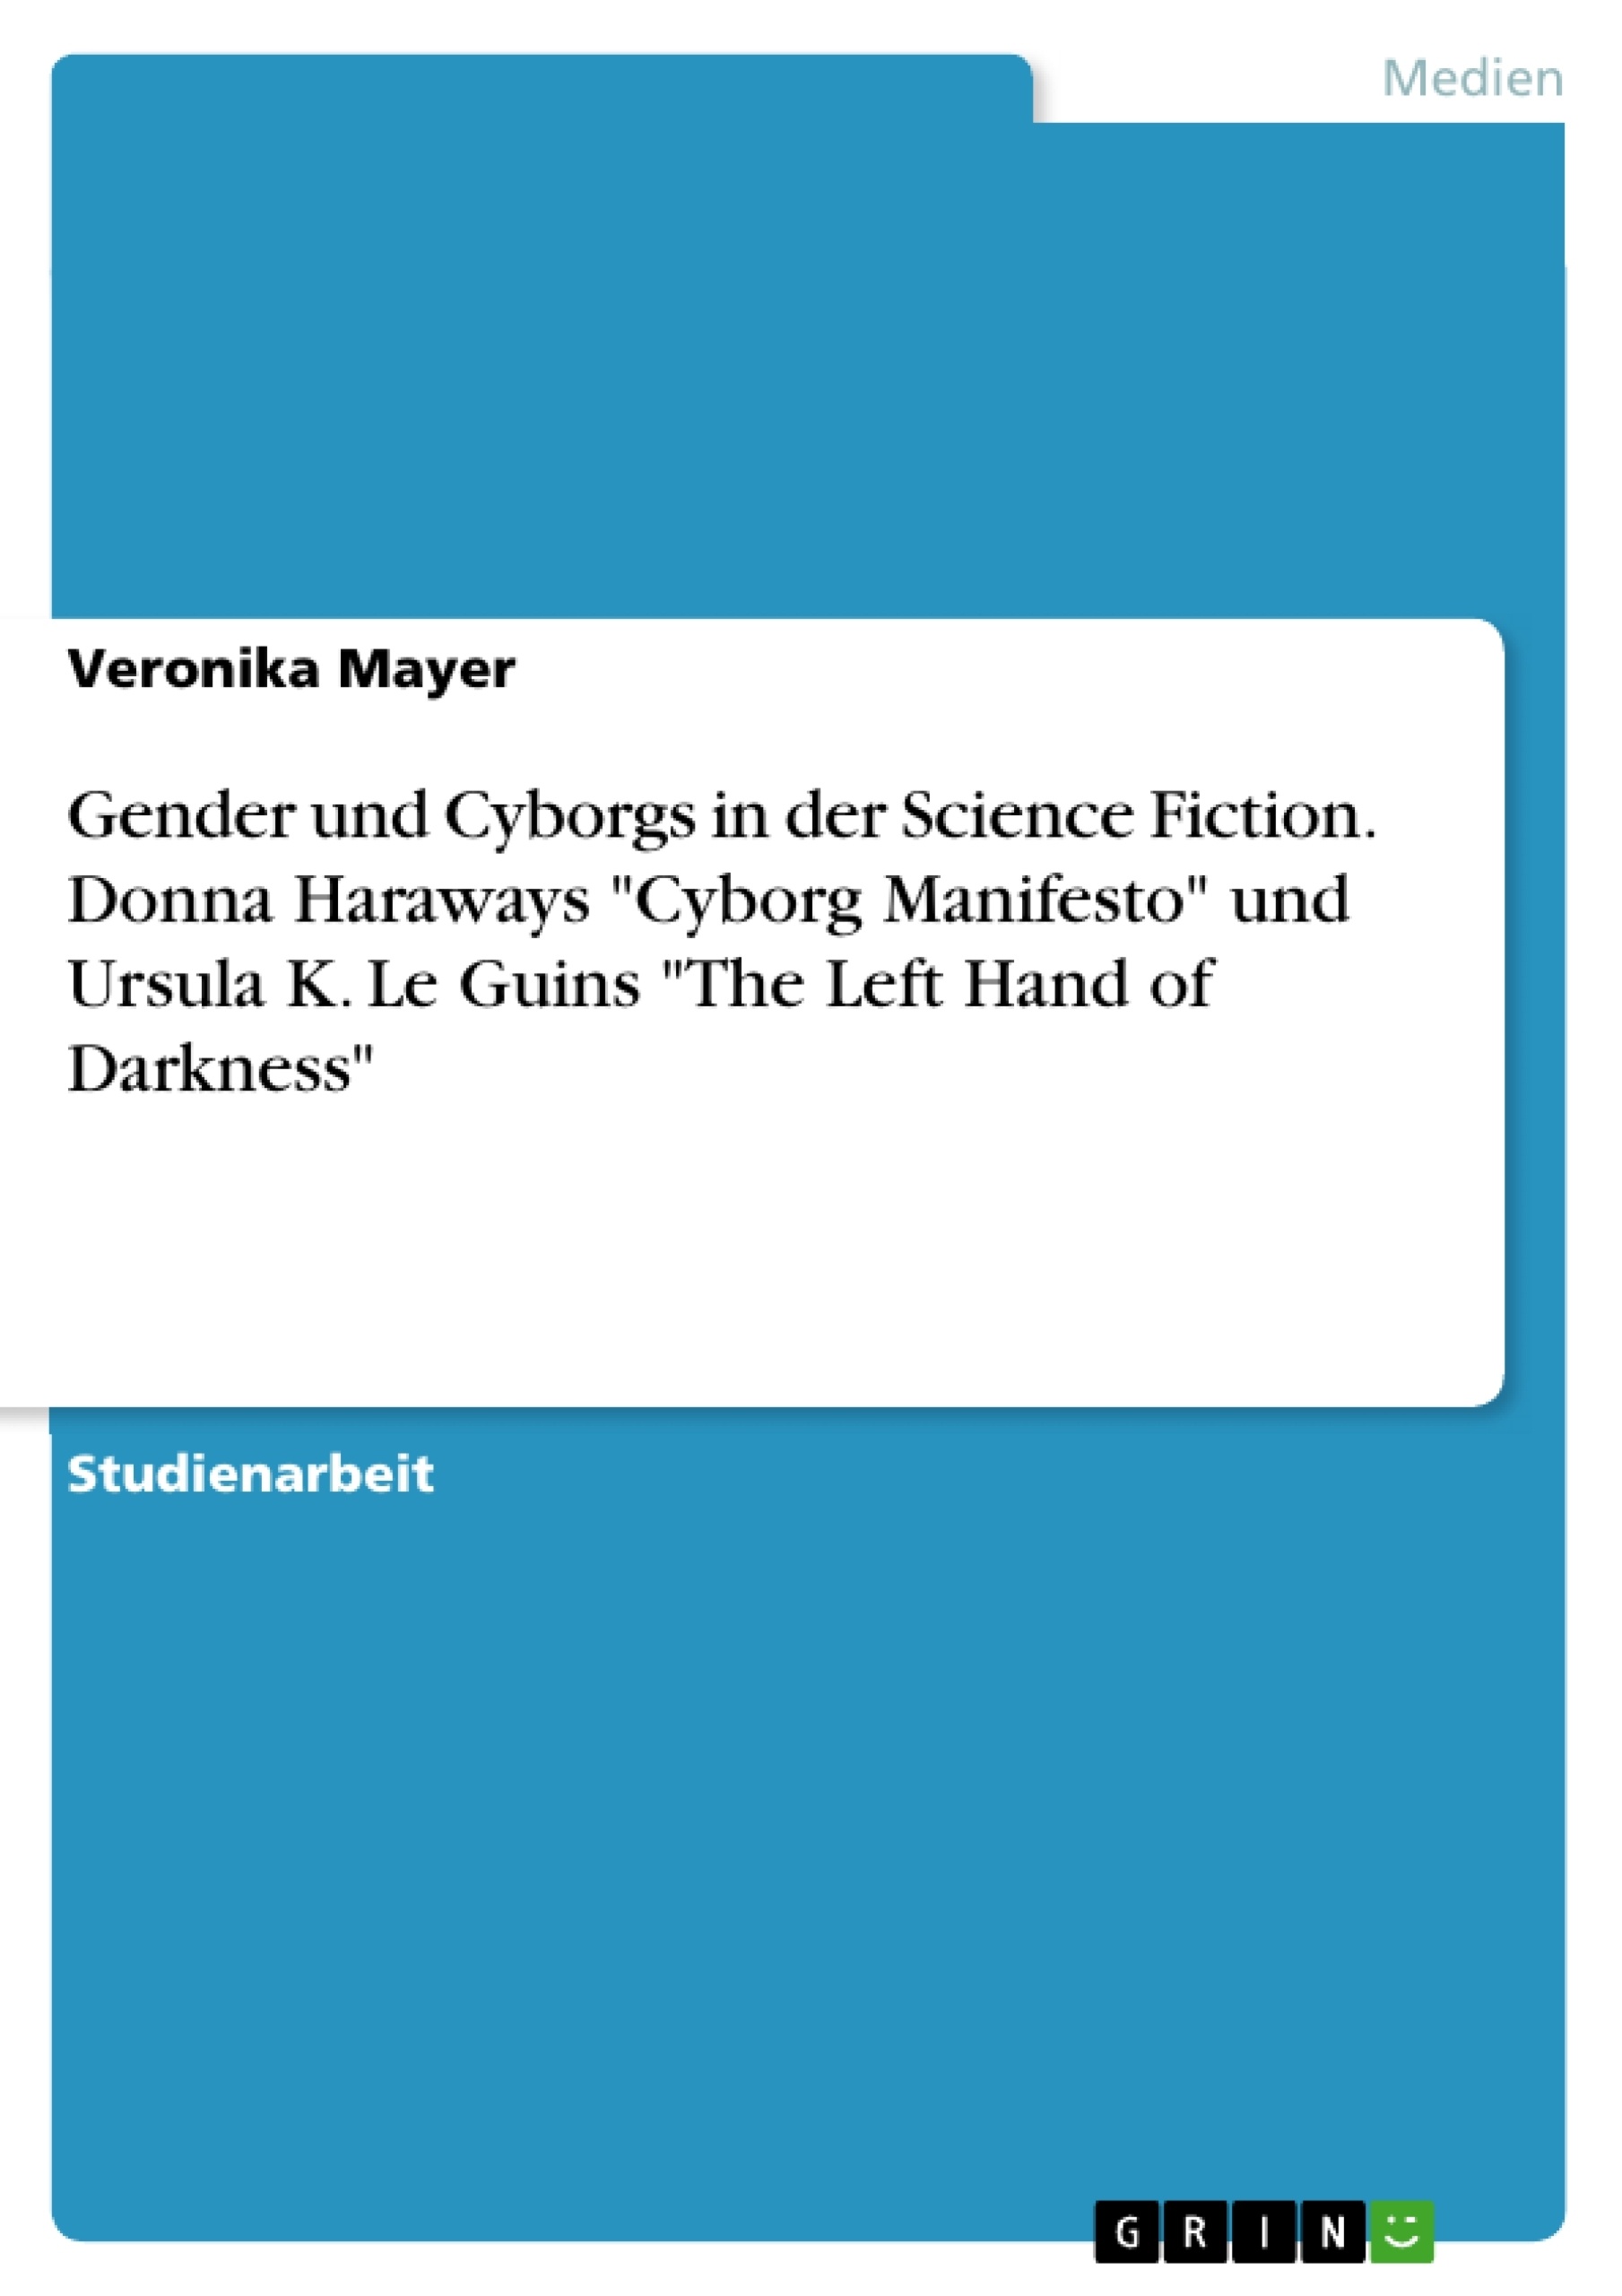 Titel: Gender und Cyborgs in der Science Fiction. Donna Haraways "Cyborg Manifesto" und Ursula K. Le Guins "The Left Hand of Darkness"